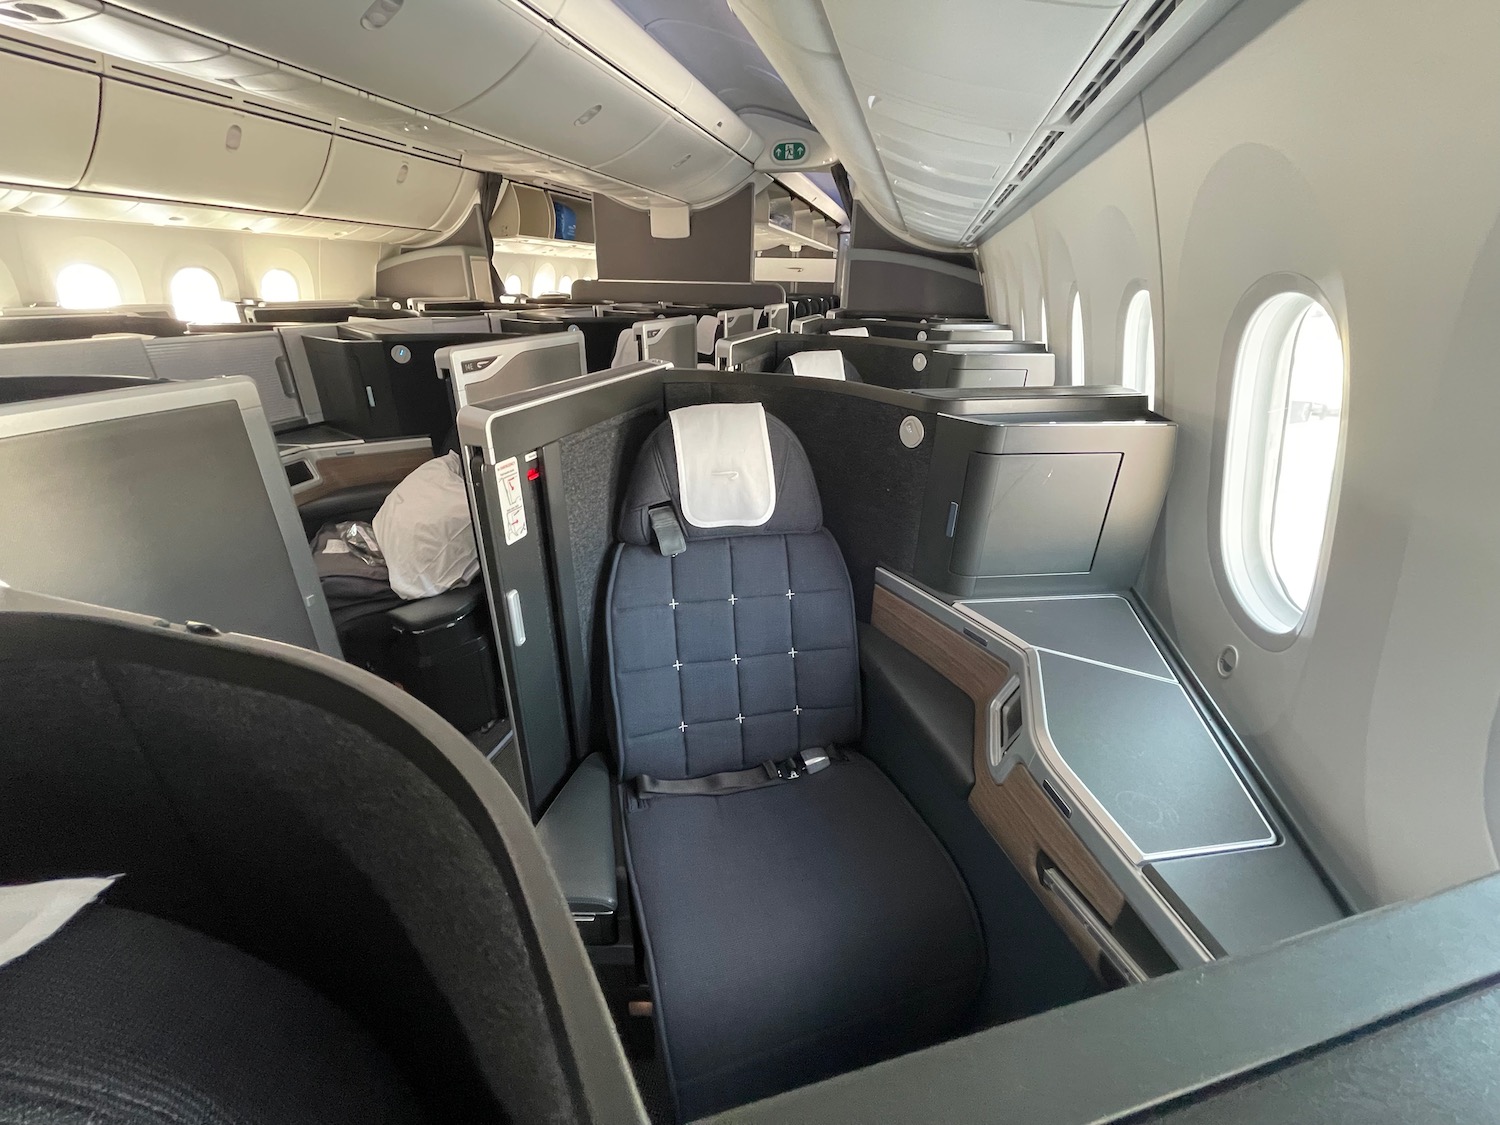 British Airways 787 10 Club World Suites 6 - Travel News, Insights & Resources.